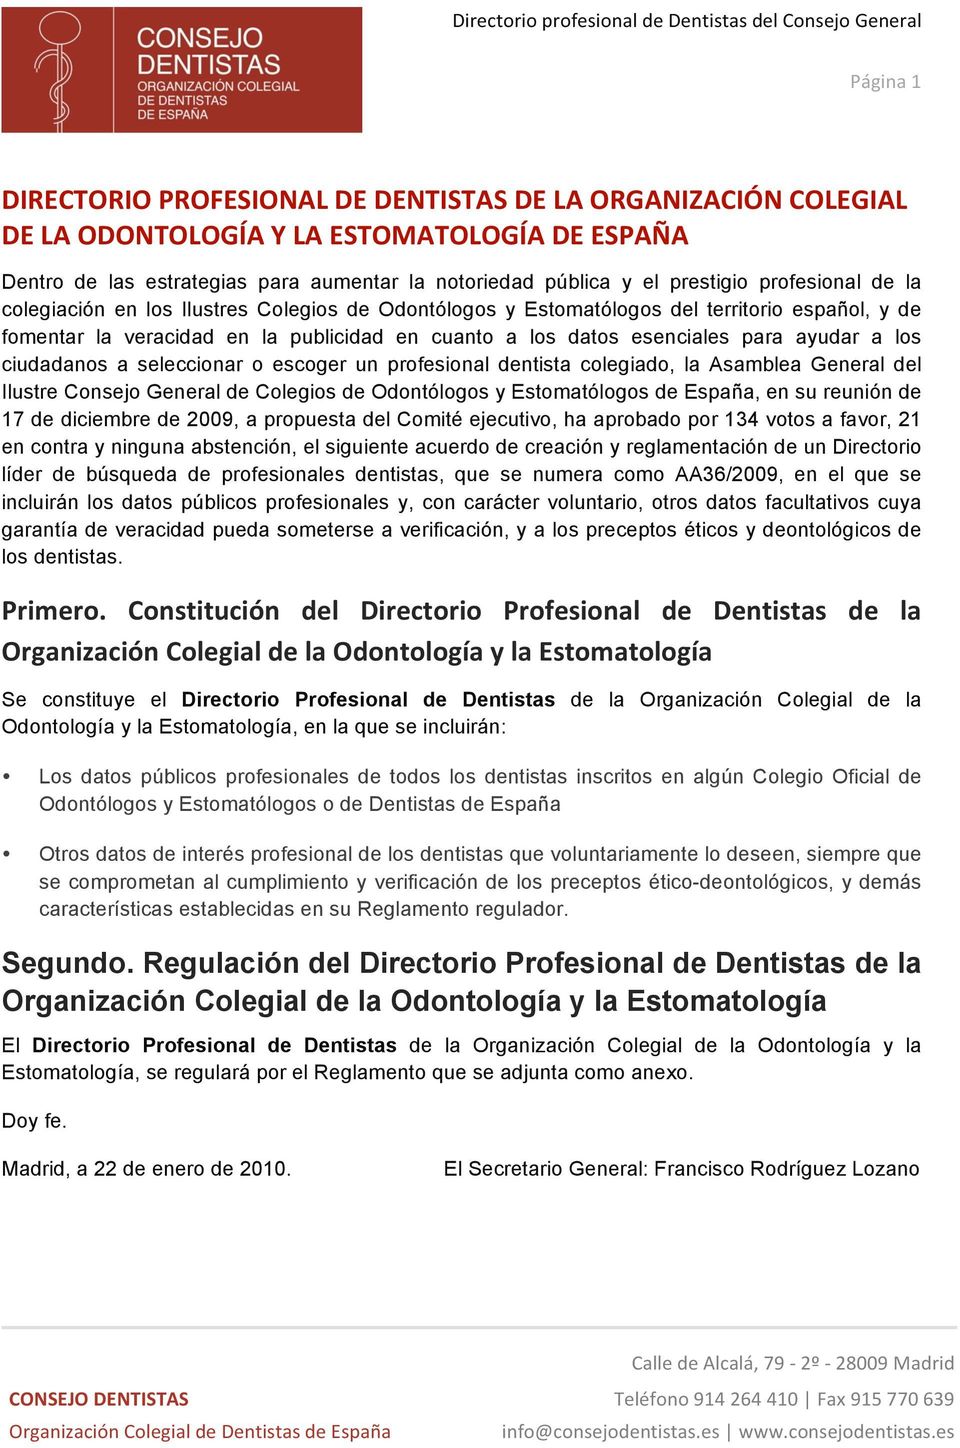 esenciales para ayudar a ls ciudadans a seleccinar escger un prfesinal dentista clegiad, la Asamblea General del Ilustre Cnsej General de Clegis de Odntólgs y Estmatólgs de España, en su reunión de